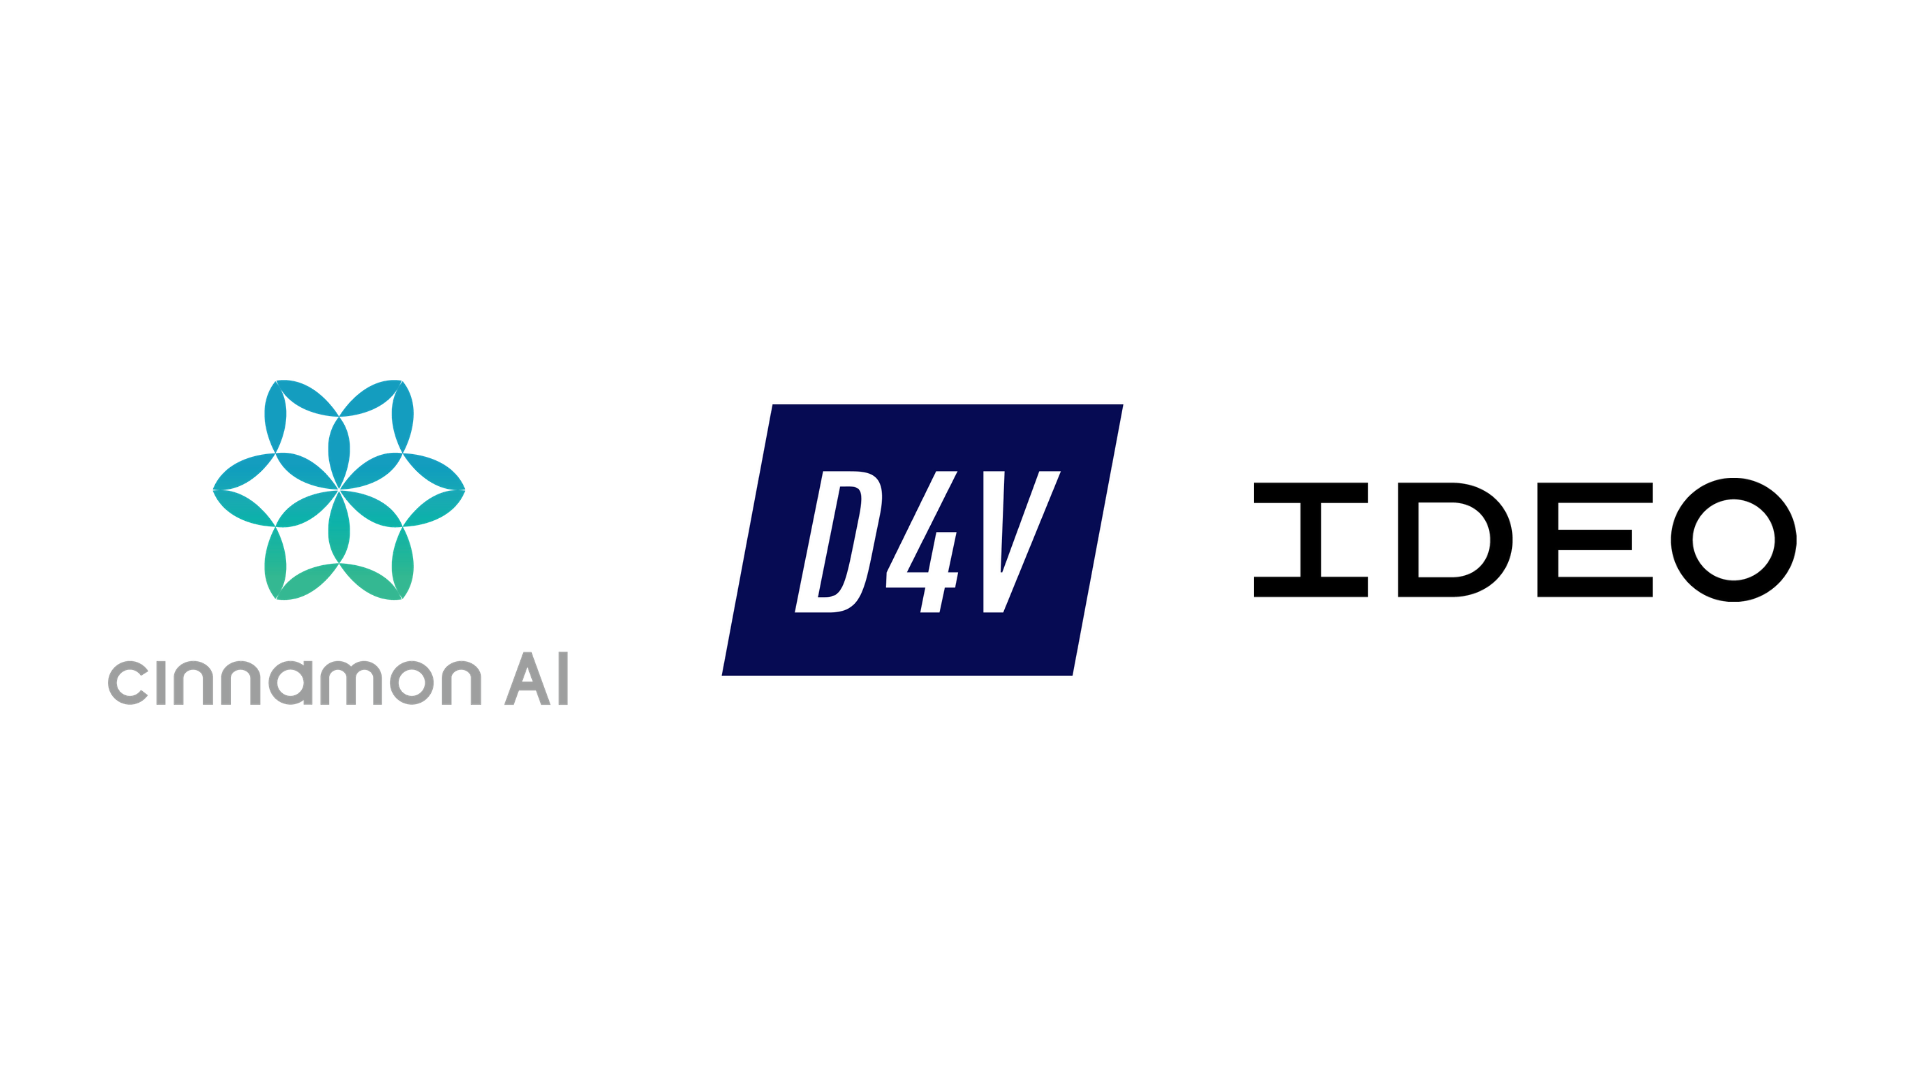 シナモンai ベンチャーキャピタル D4v デザインファーム Ideo と Aiモデル開発に関するワークショップを共同開発 シナモンaiのプレスリリース